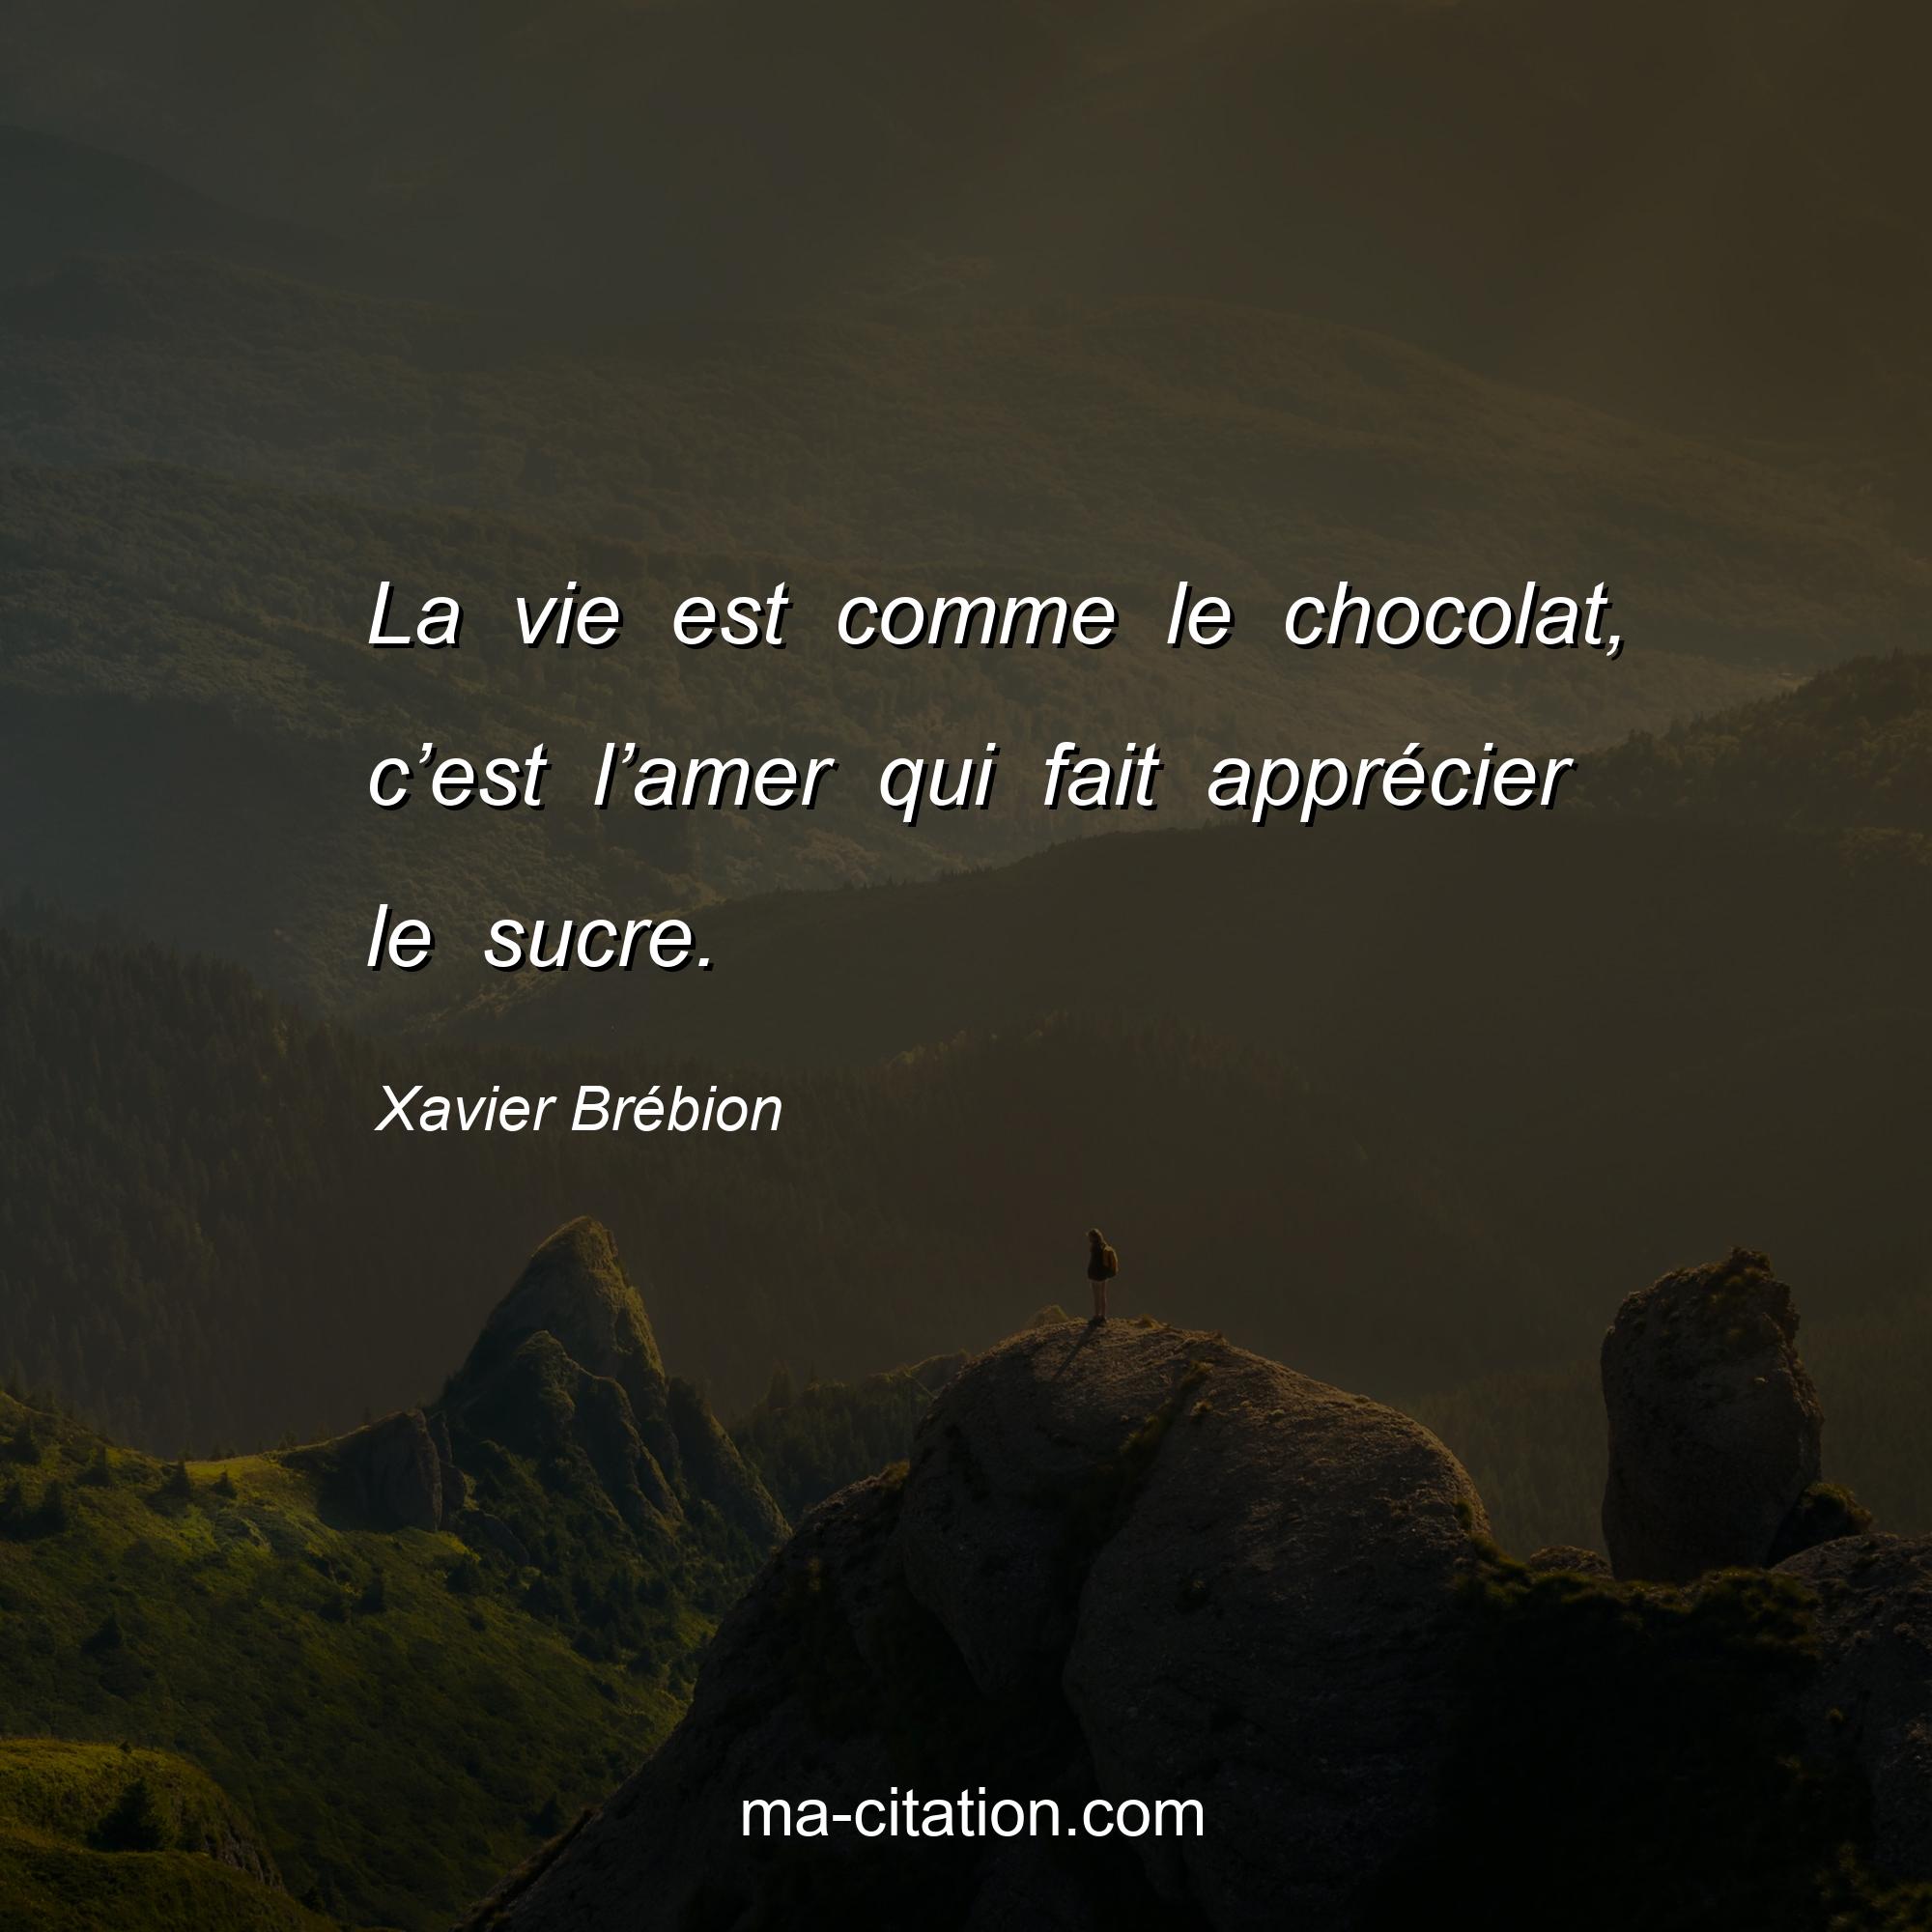 Xavier Brébion : La vie est comme le chocolat, c’est l’amer qui fait apprécier le sucre.